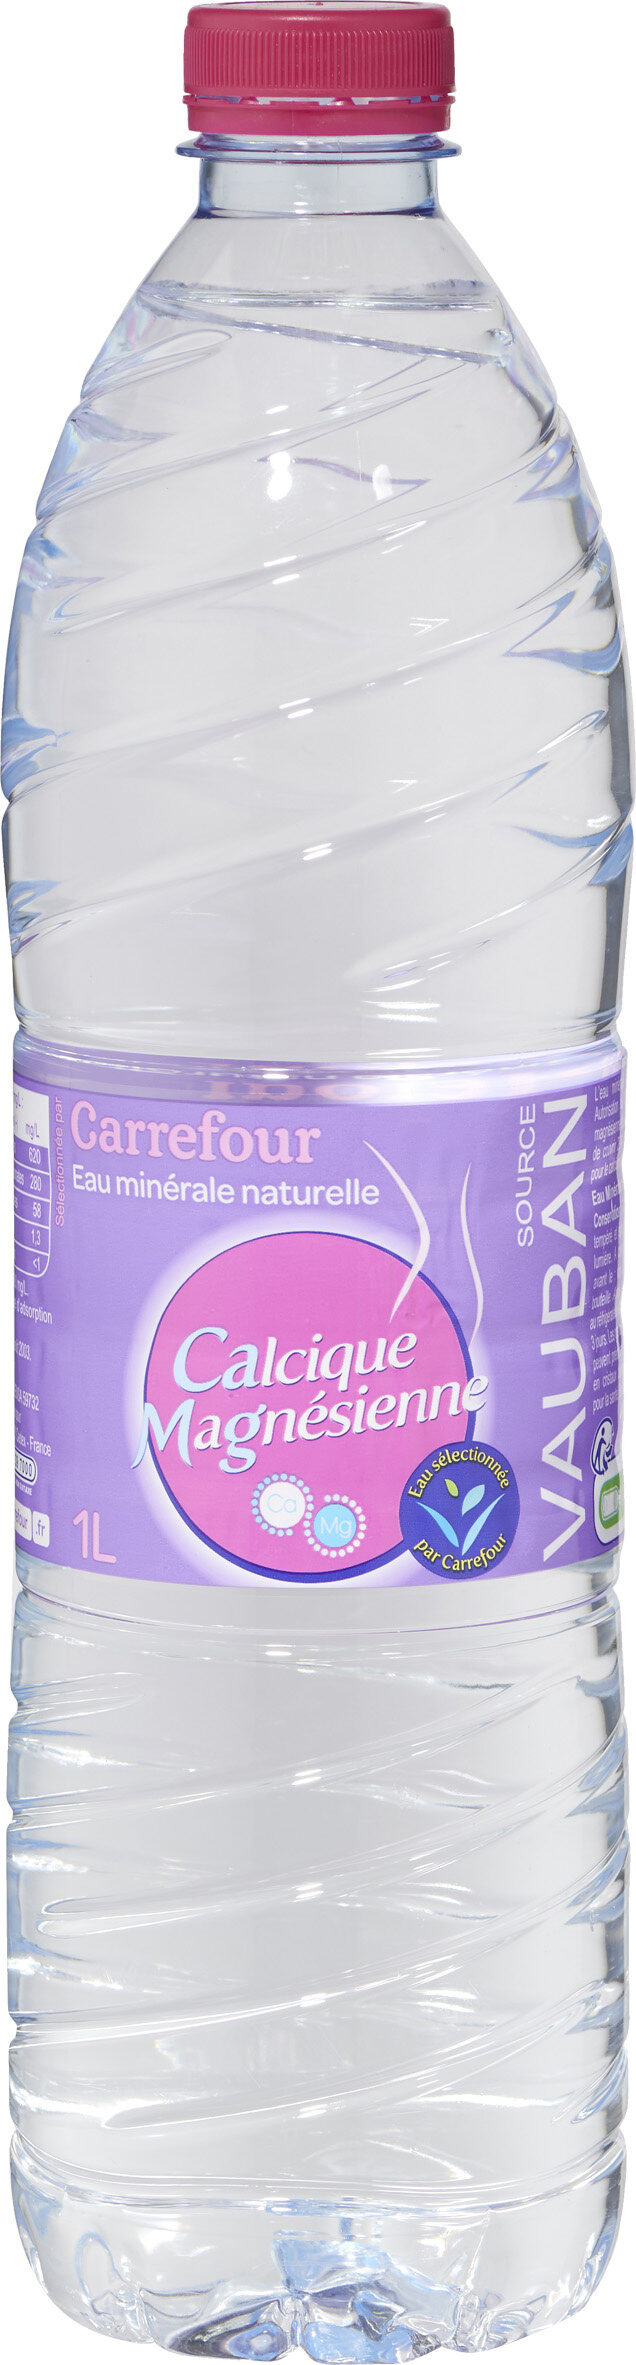 Eau Calcique Magnésienne - Prodotto - fr